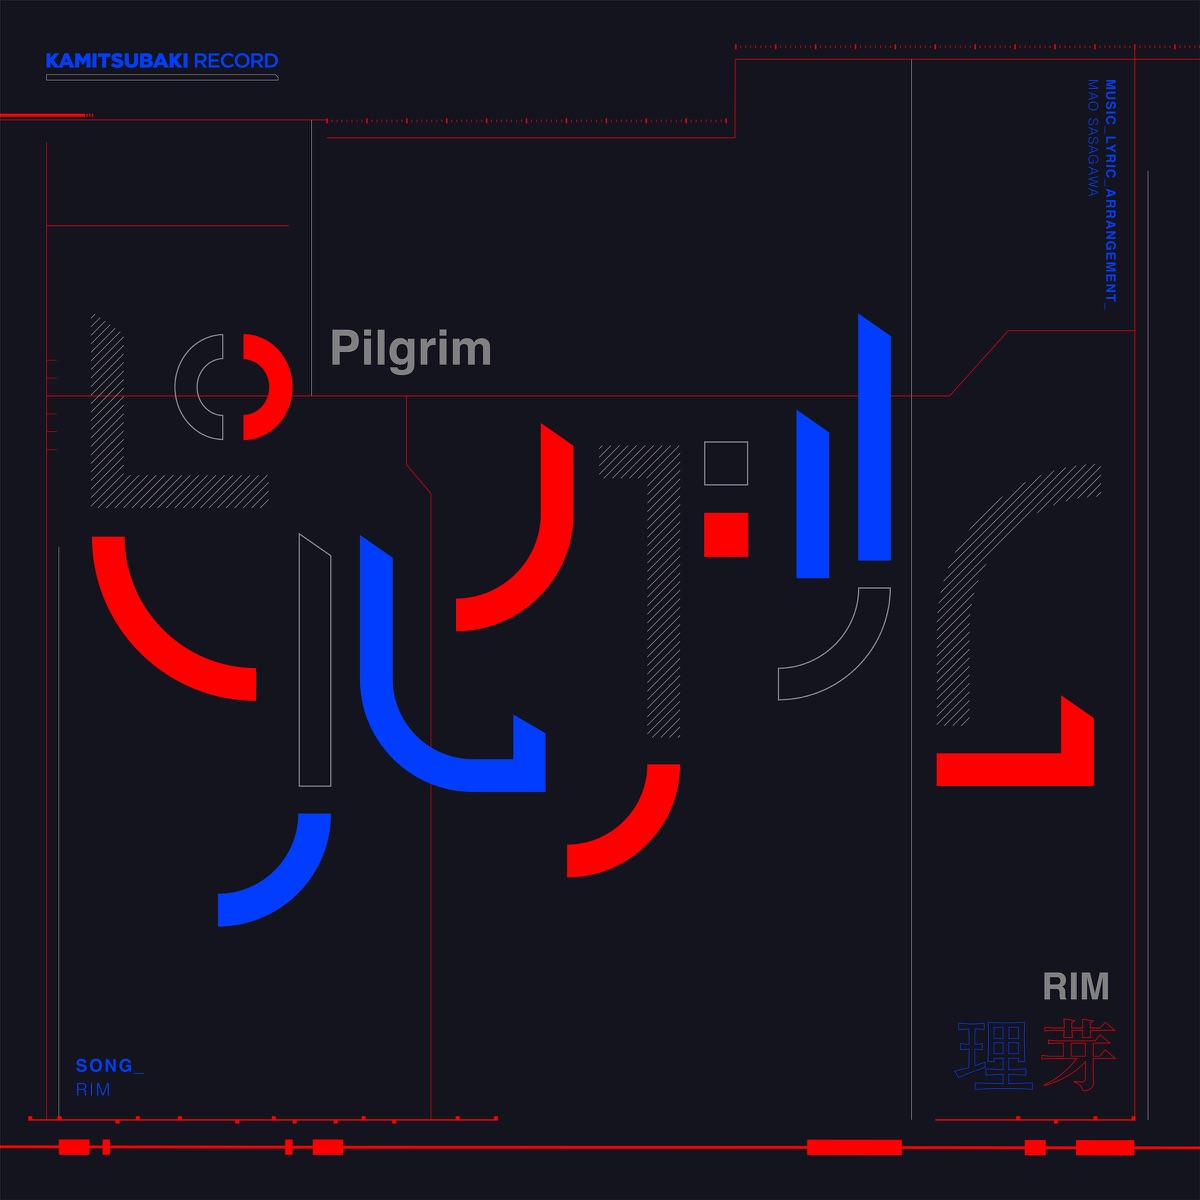 Cover art for『RIM - Pilgrim』from the release『Pilgrim』